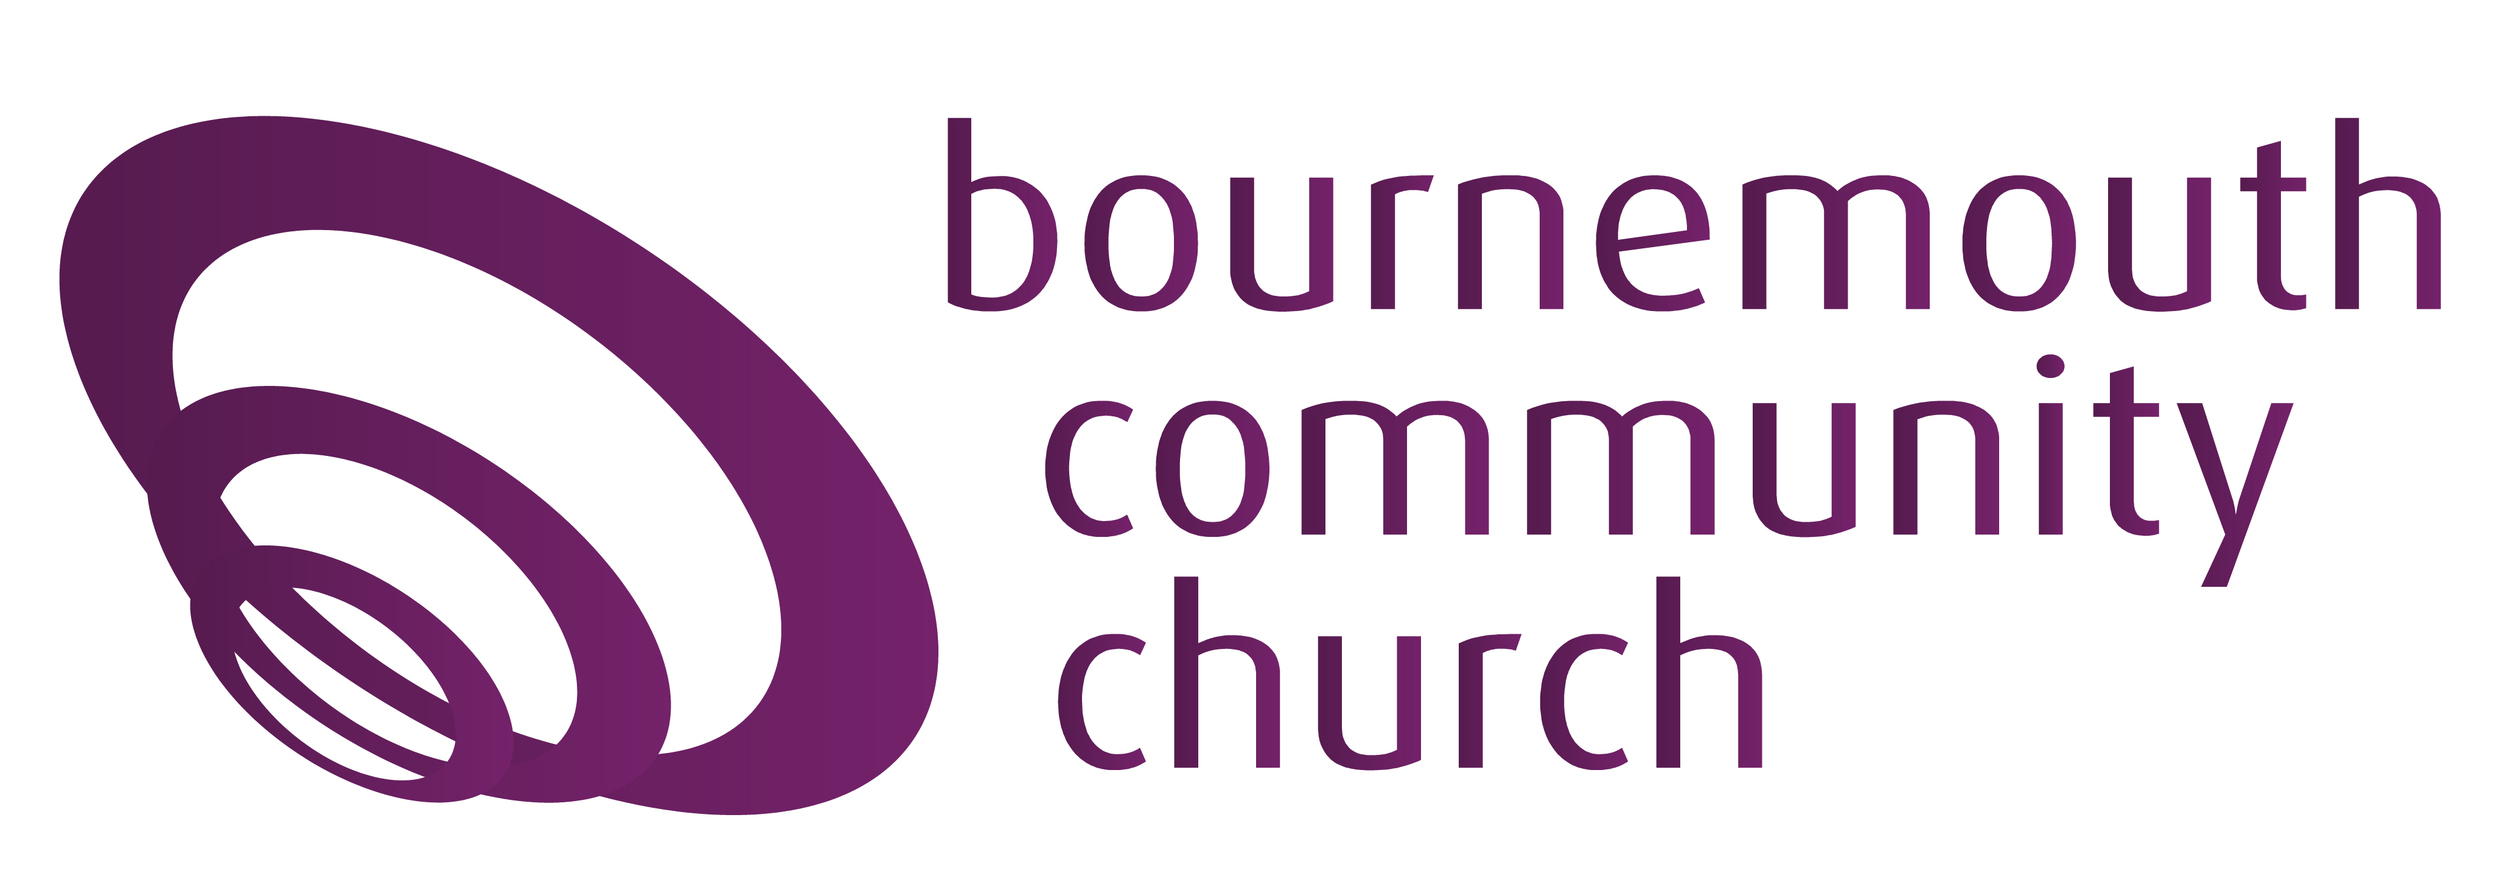 BCC Logo-01.jpg